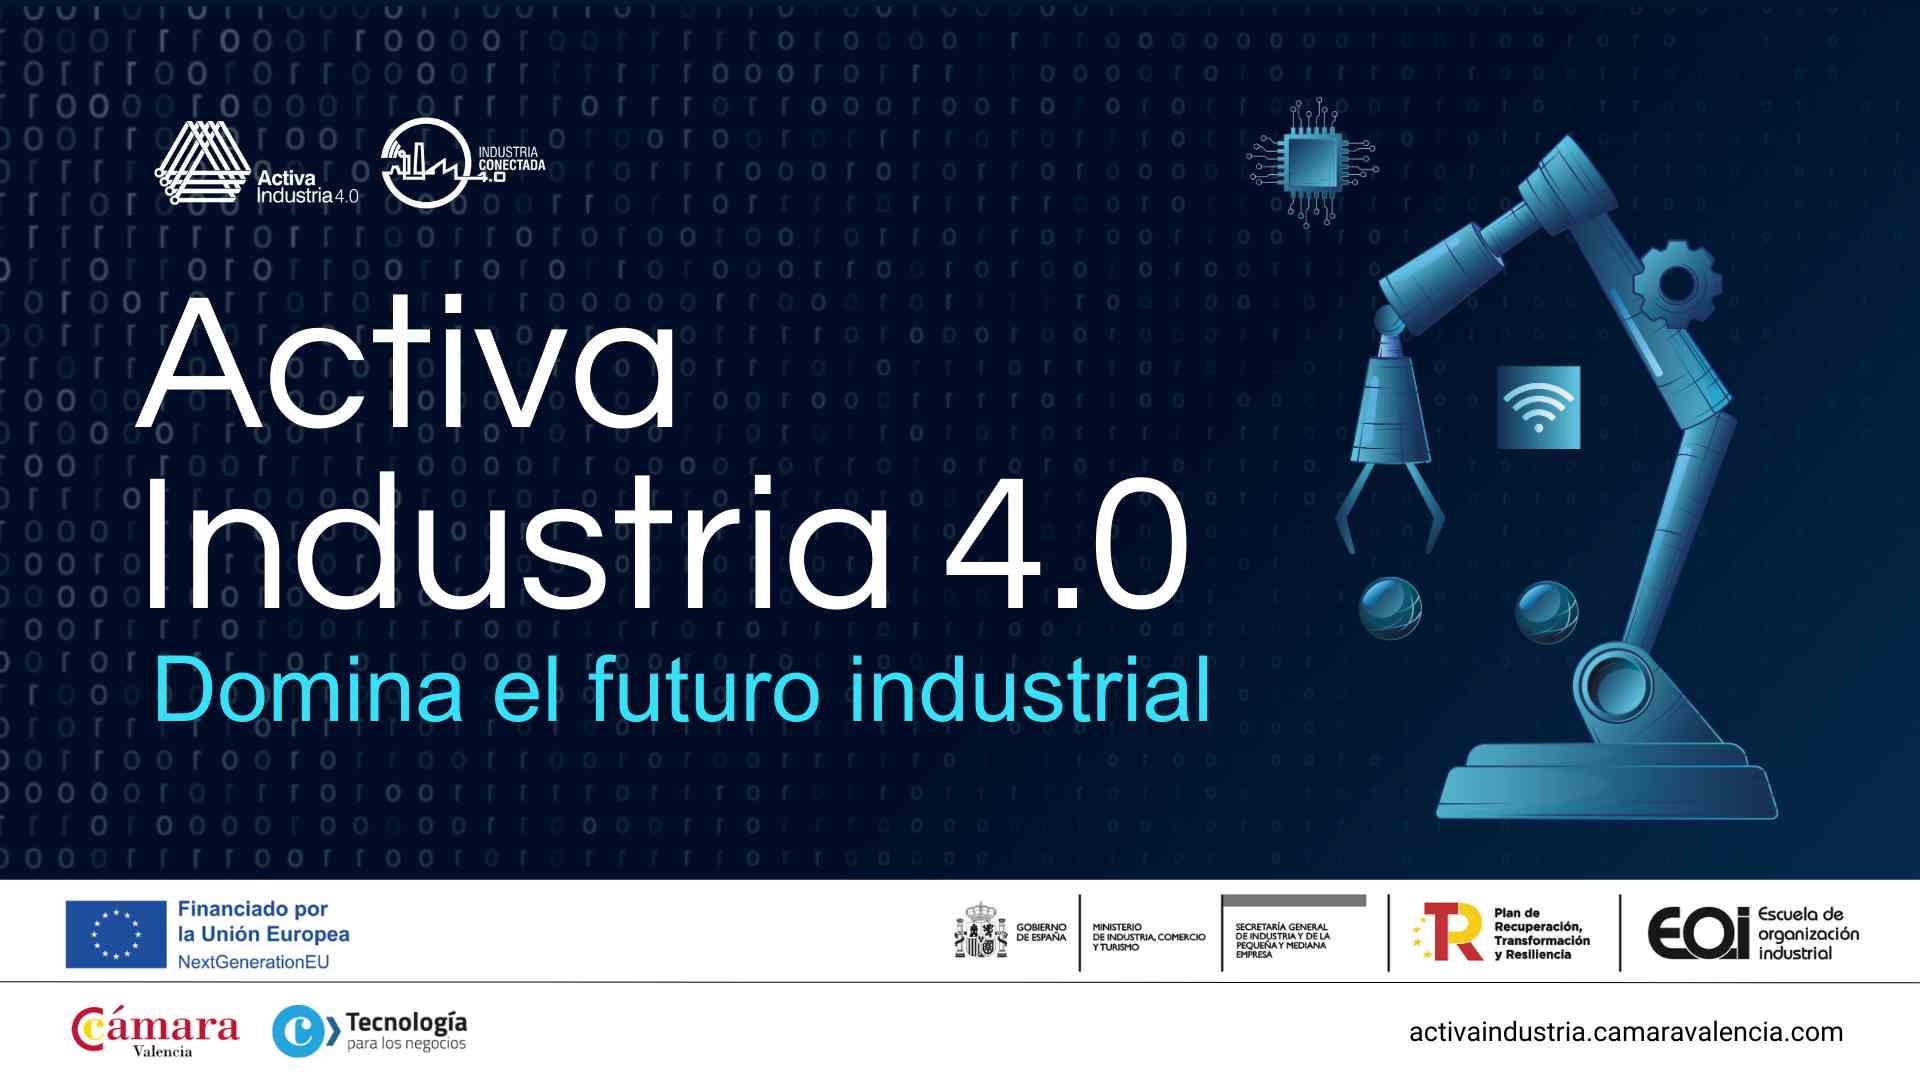 Activa Industria 4.0 Cámara Valencia